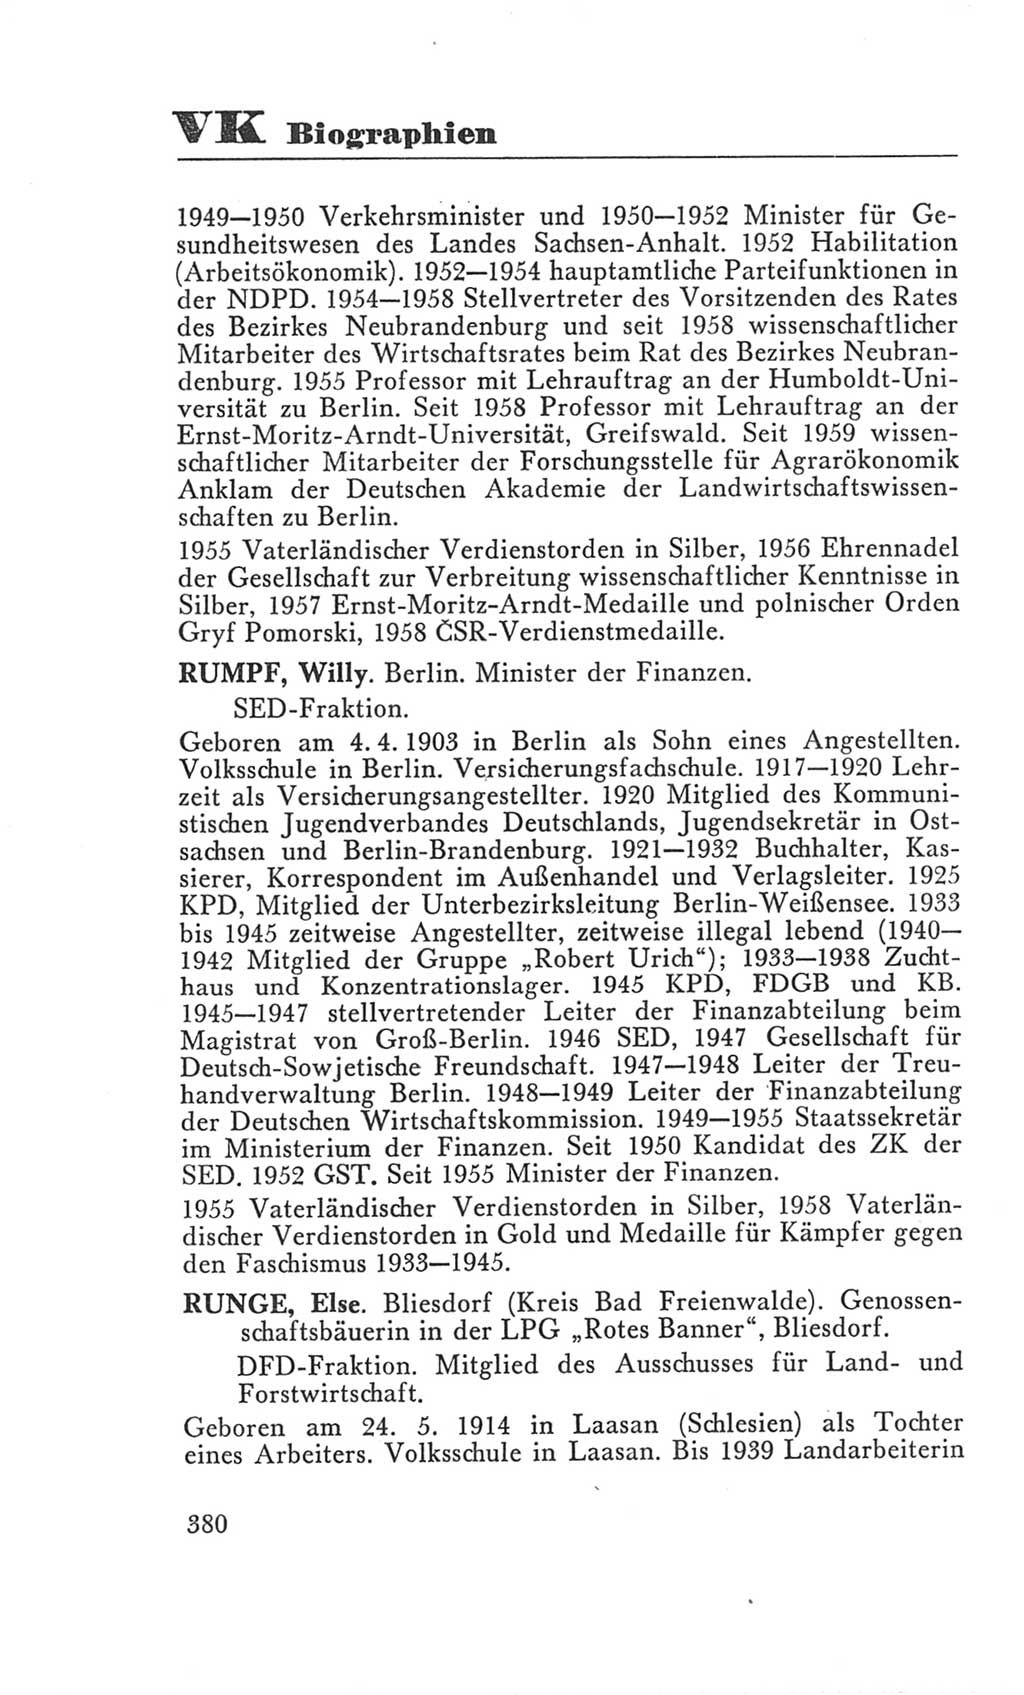 Handbuch der Volkskammer (VK) der Deutschen Demokratischen Republik (DDR), 3. Wahlperiode 1958-1963, Seite 380 (Hdb. VK. DDR 3. WP. 1958-1963, S. 380)